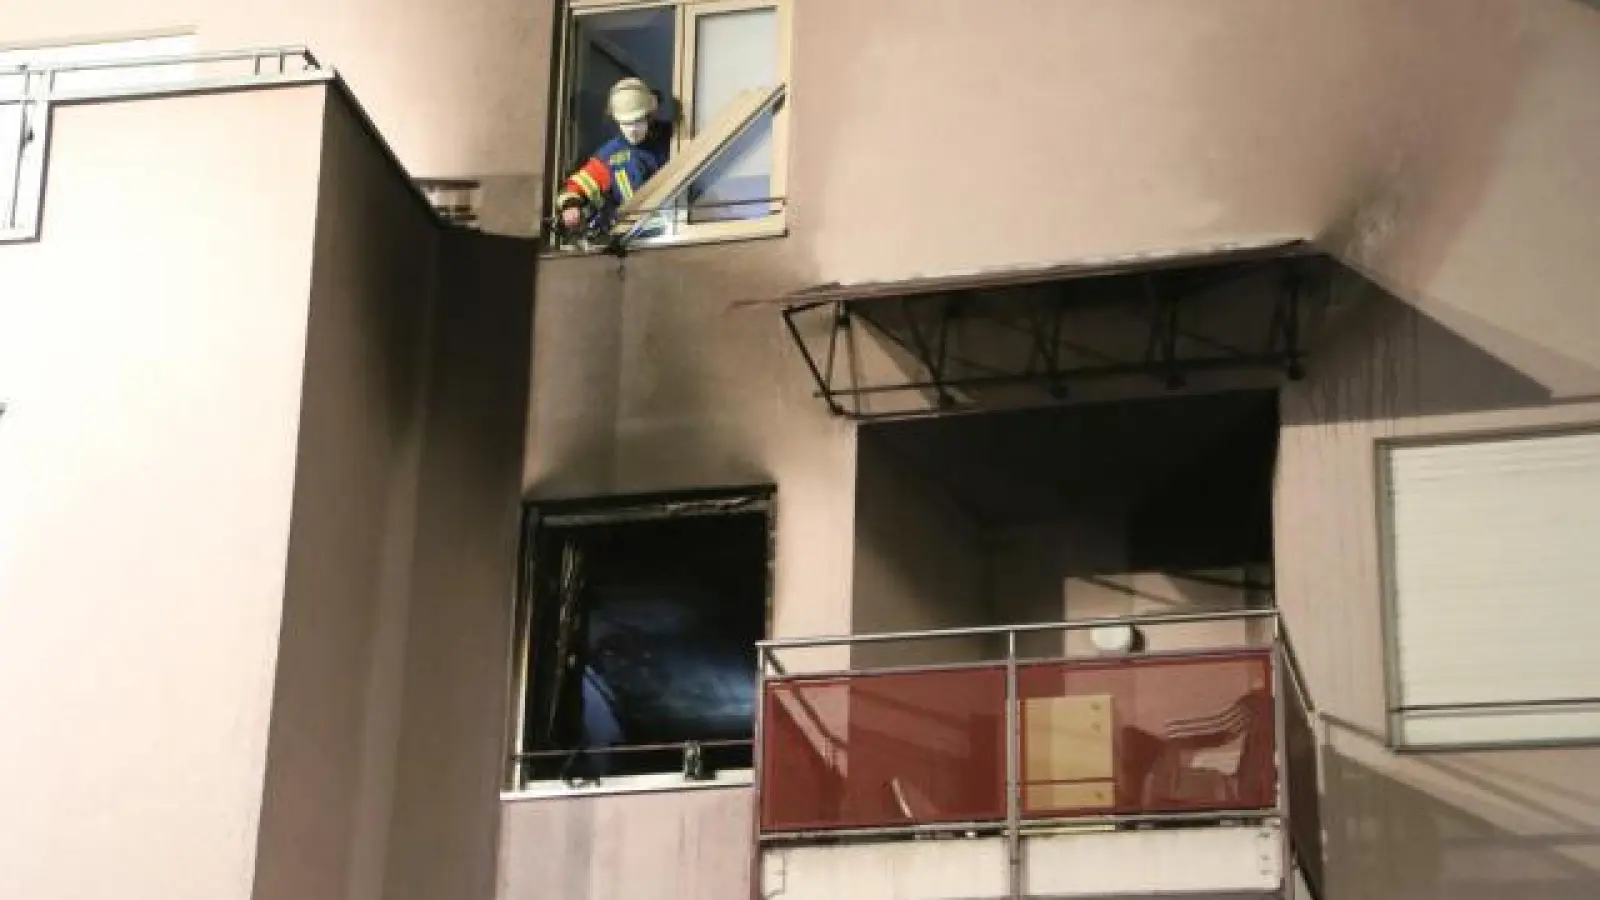 In diesem Zimmer (unteres Fenster) soll der 33-jährige Sohn der Bewohnerin das Feuer vorsätzlich gelegt haben.